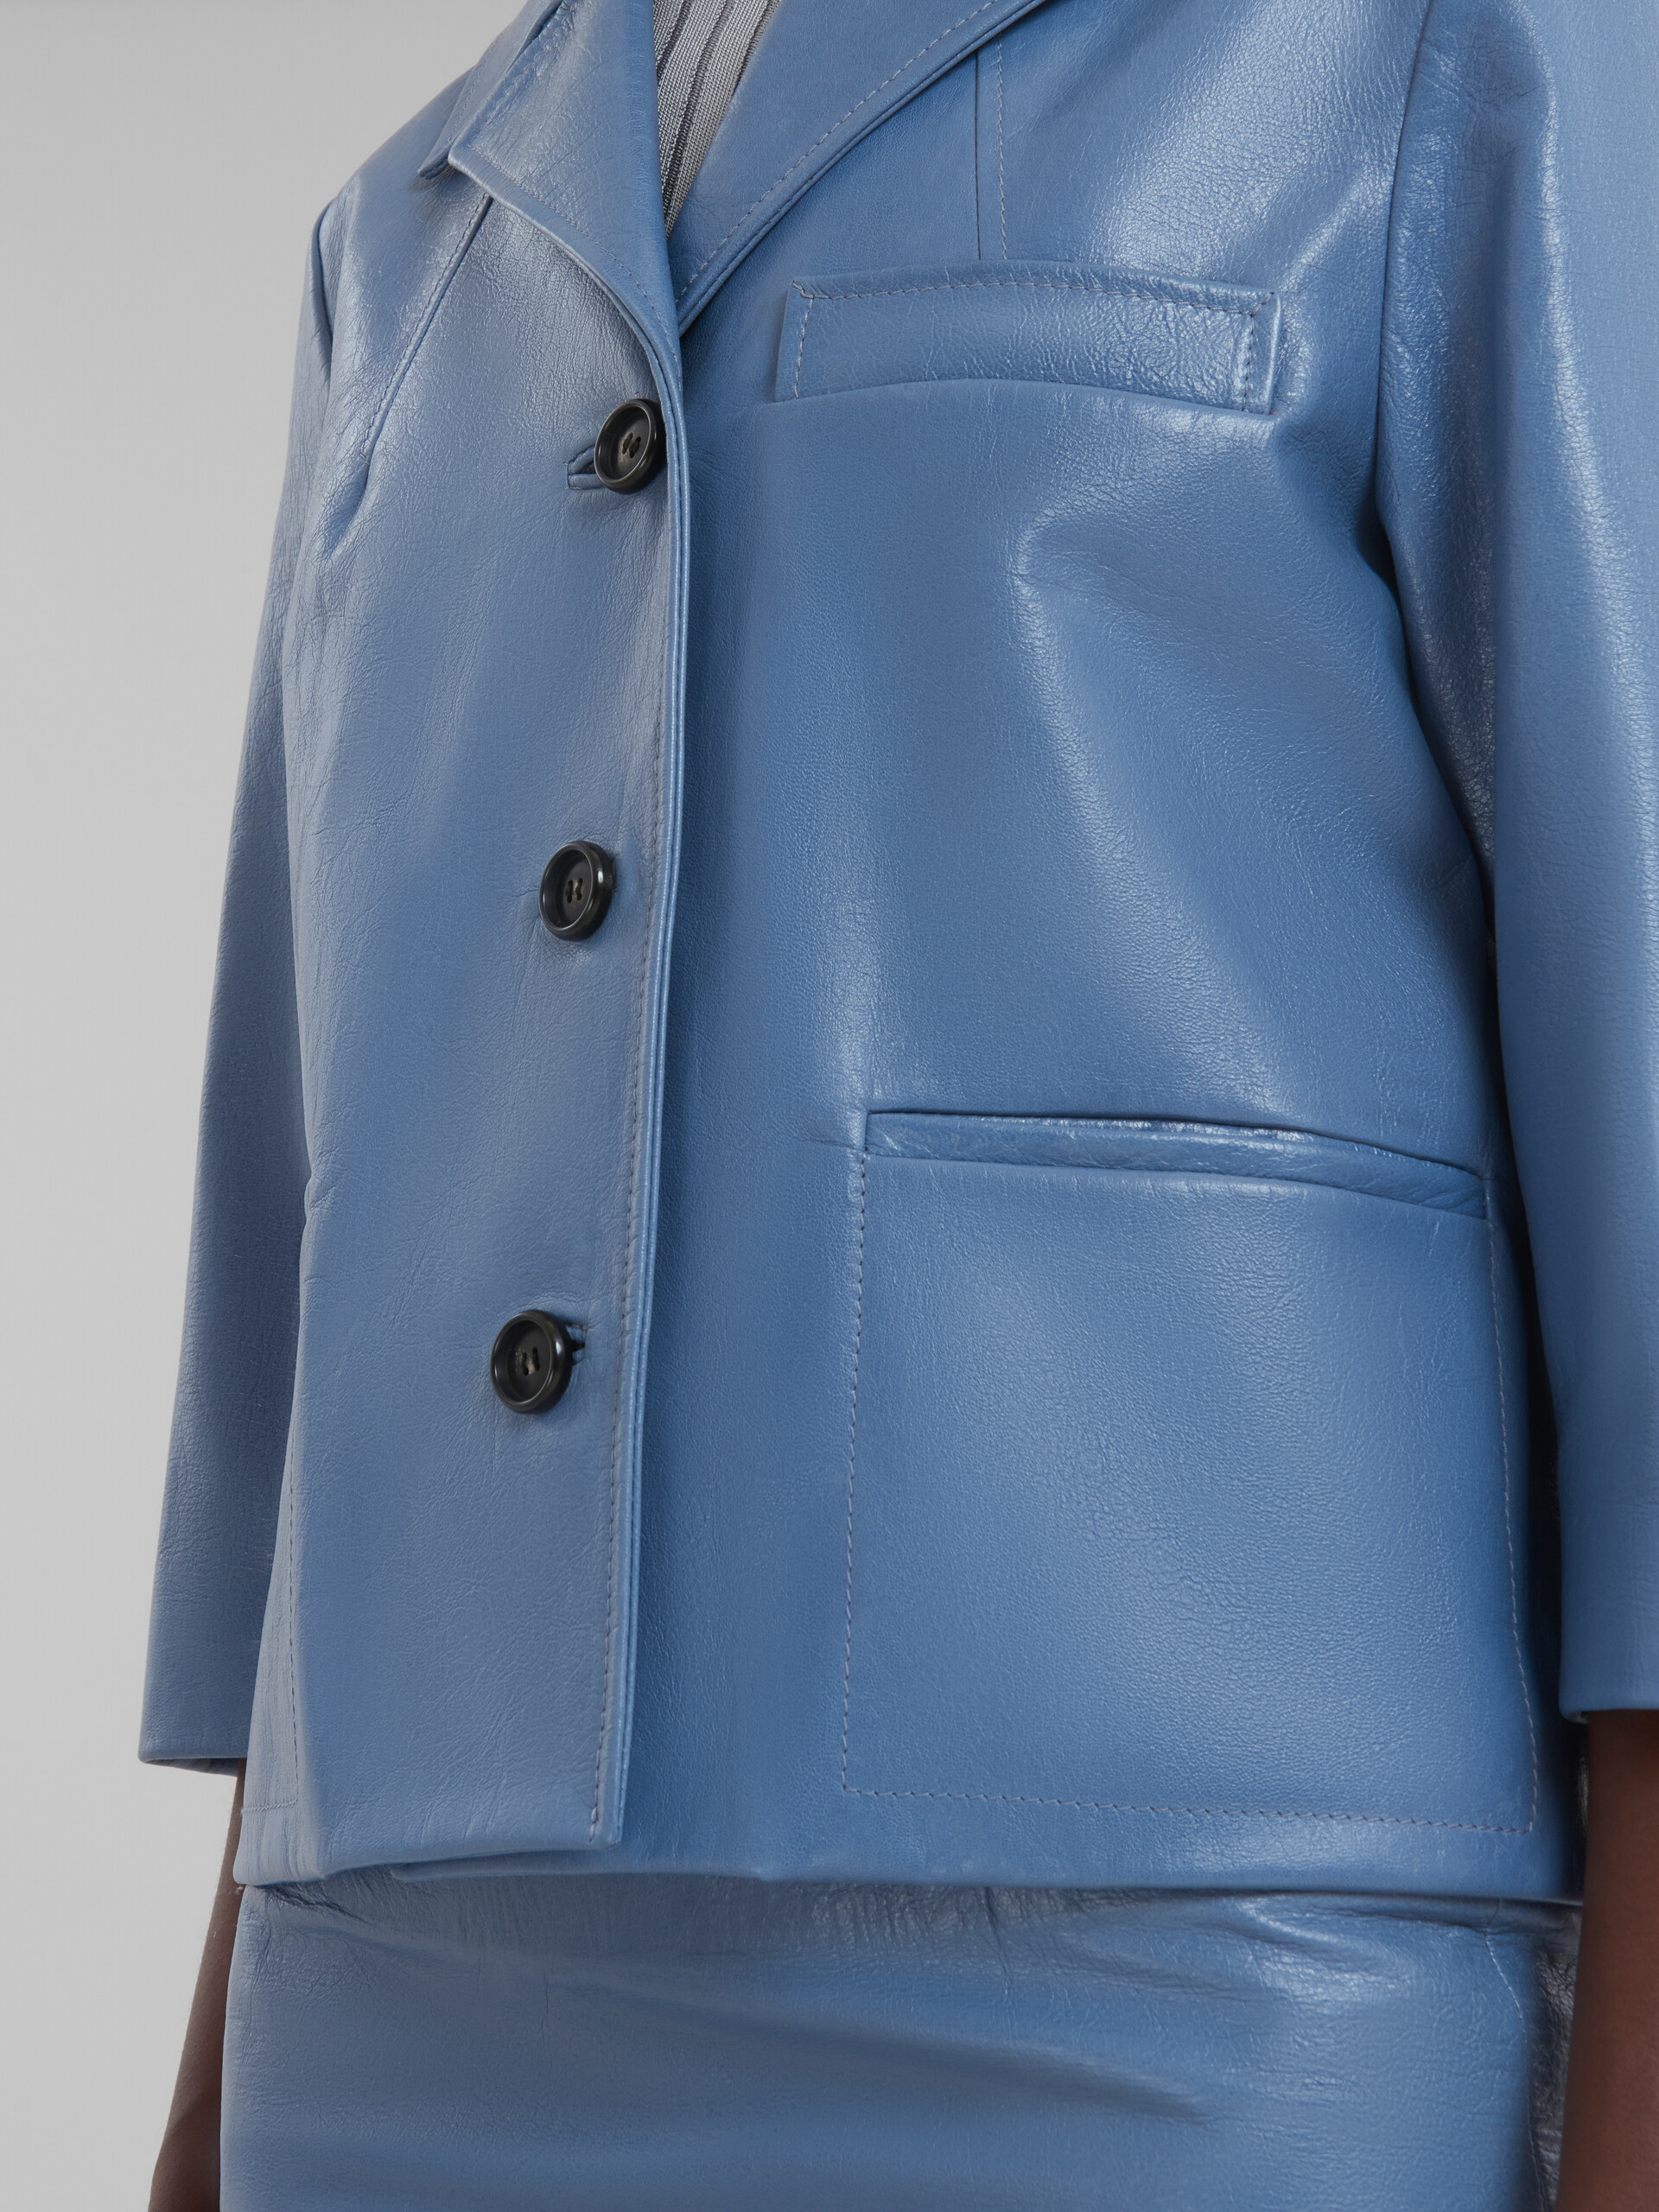 Blaue Jacke aus glänzendem Leder - Jacken - Image 5